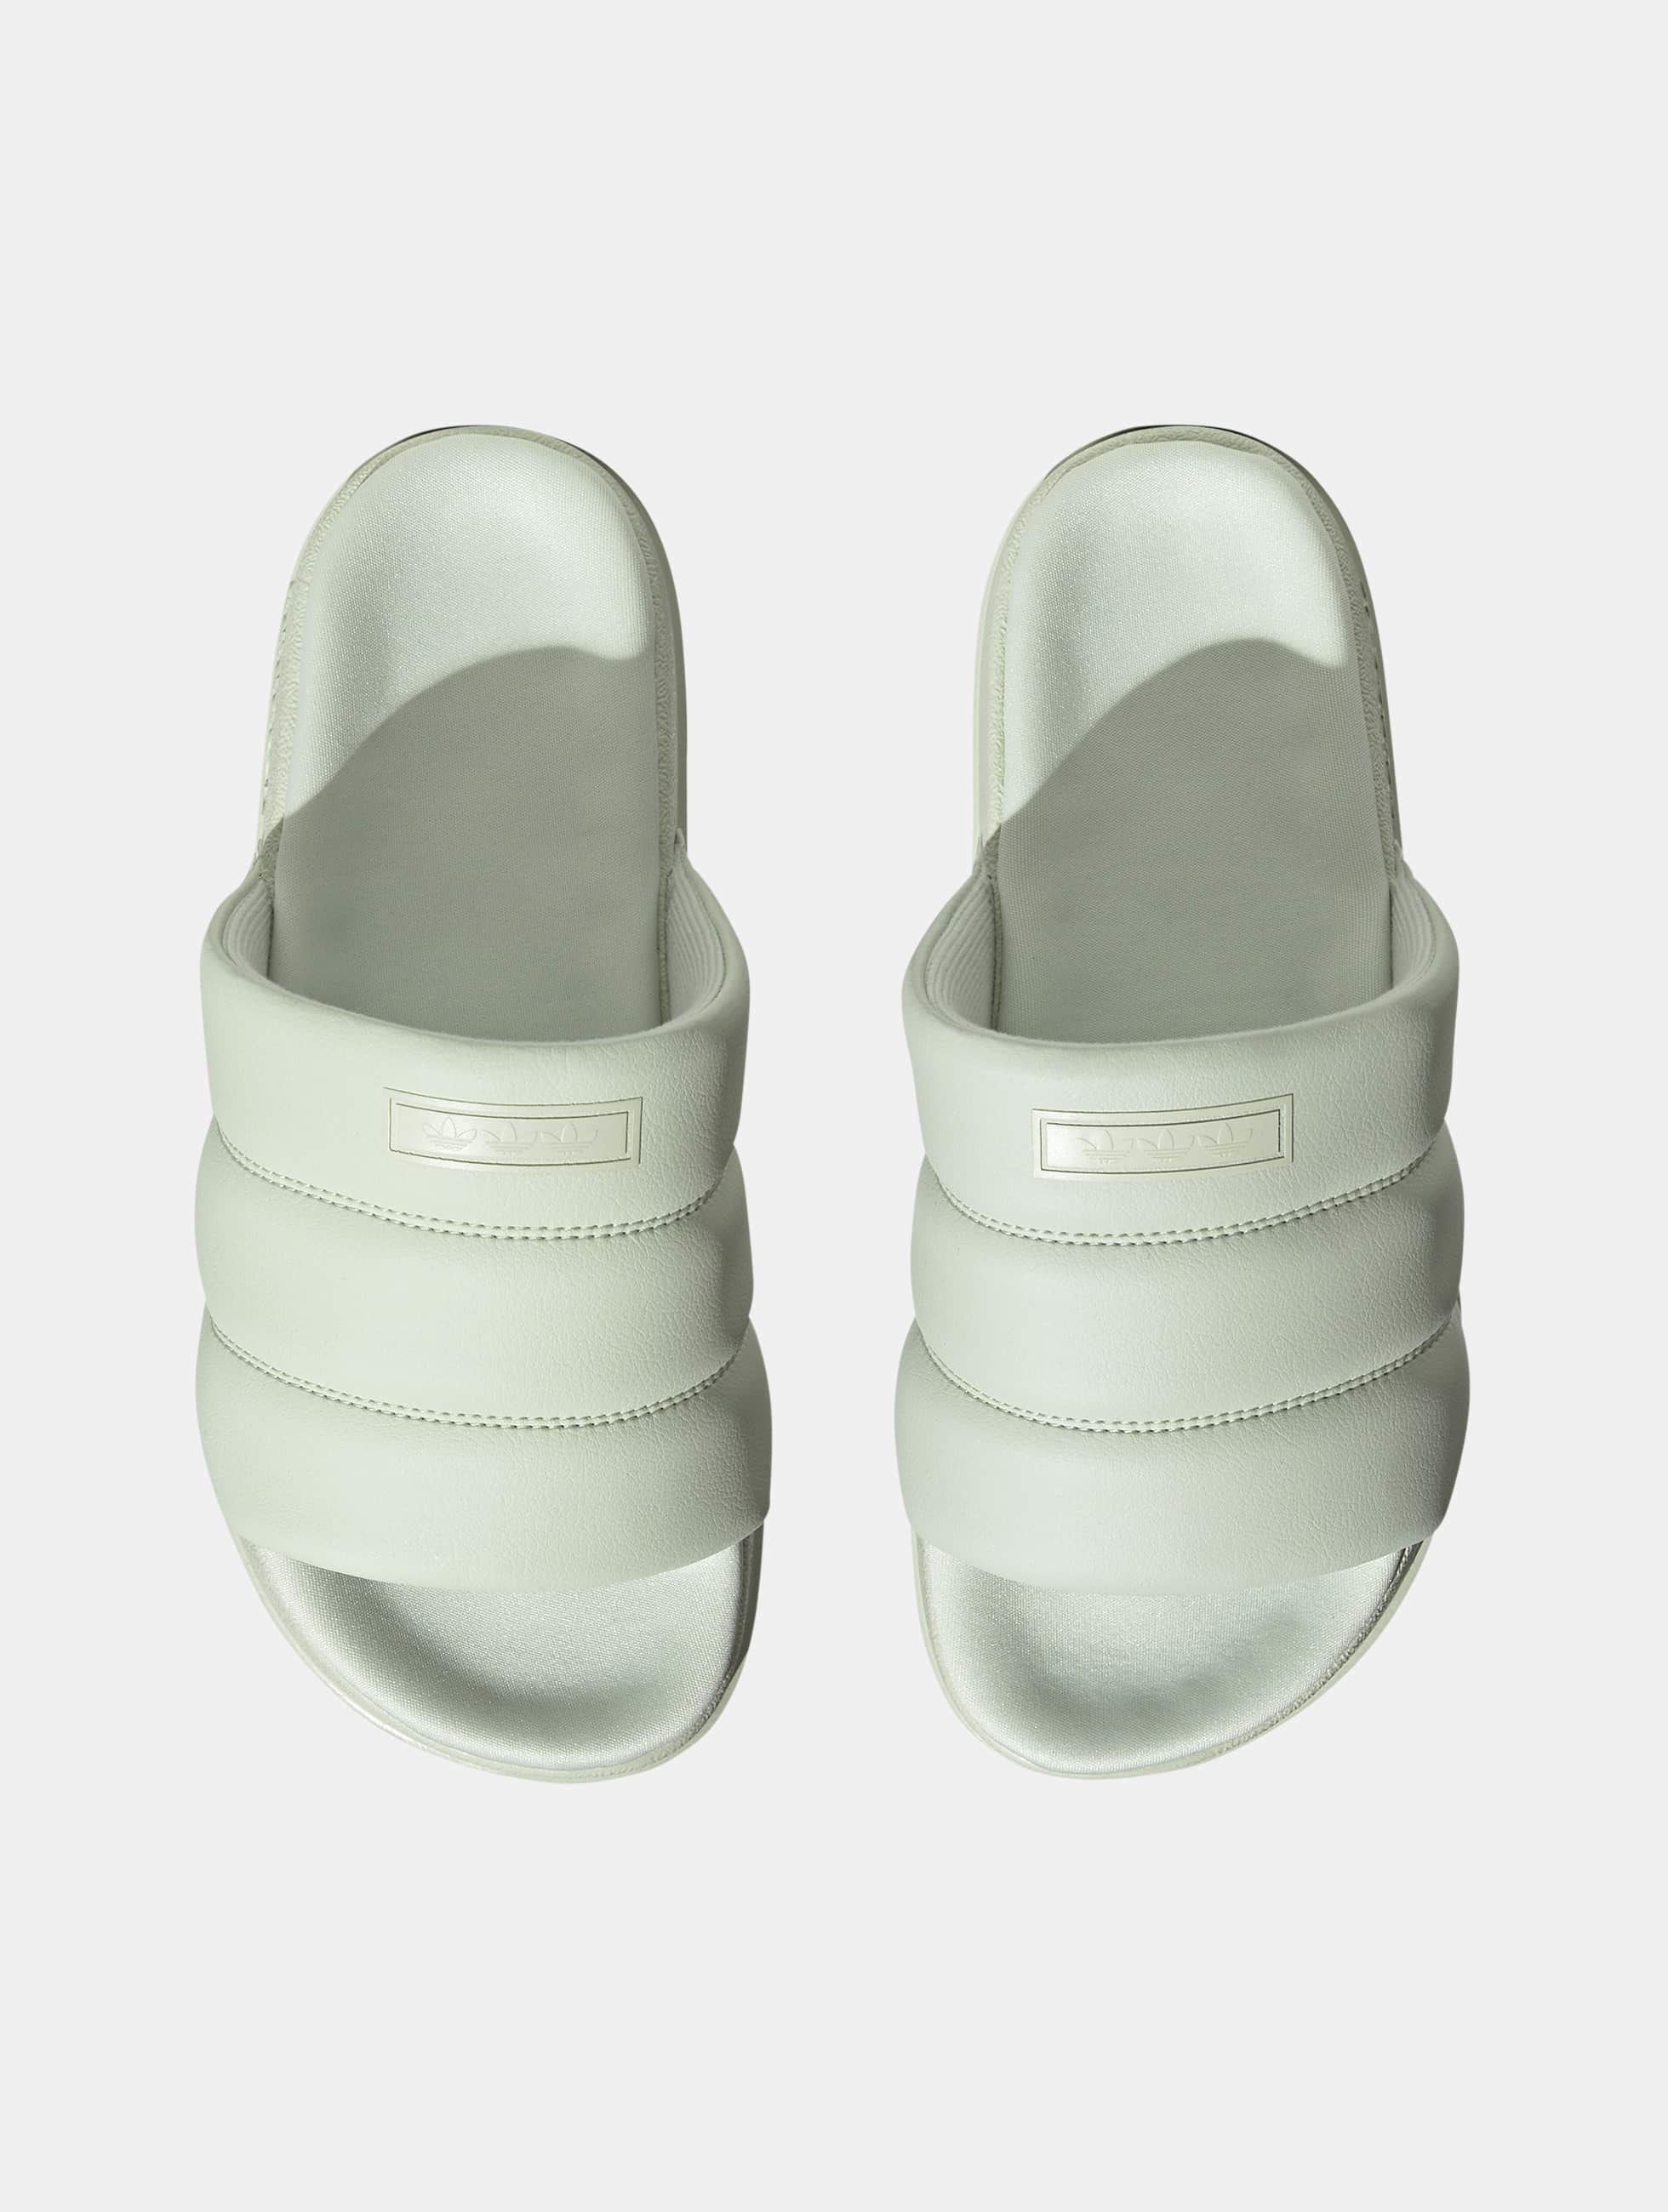 adidas Originals Shoe / Sandals Adilette Essential in green 1000859